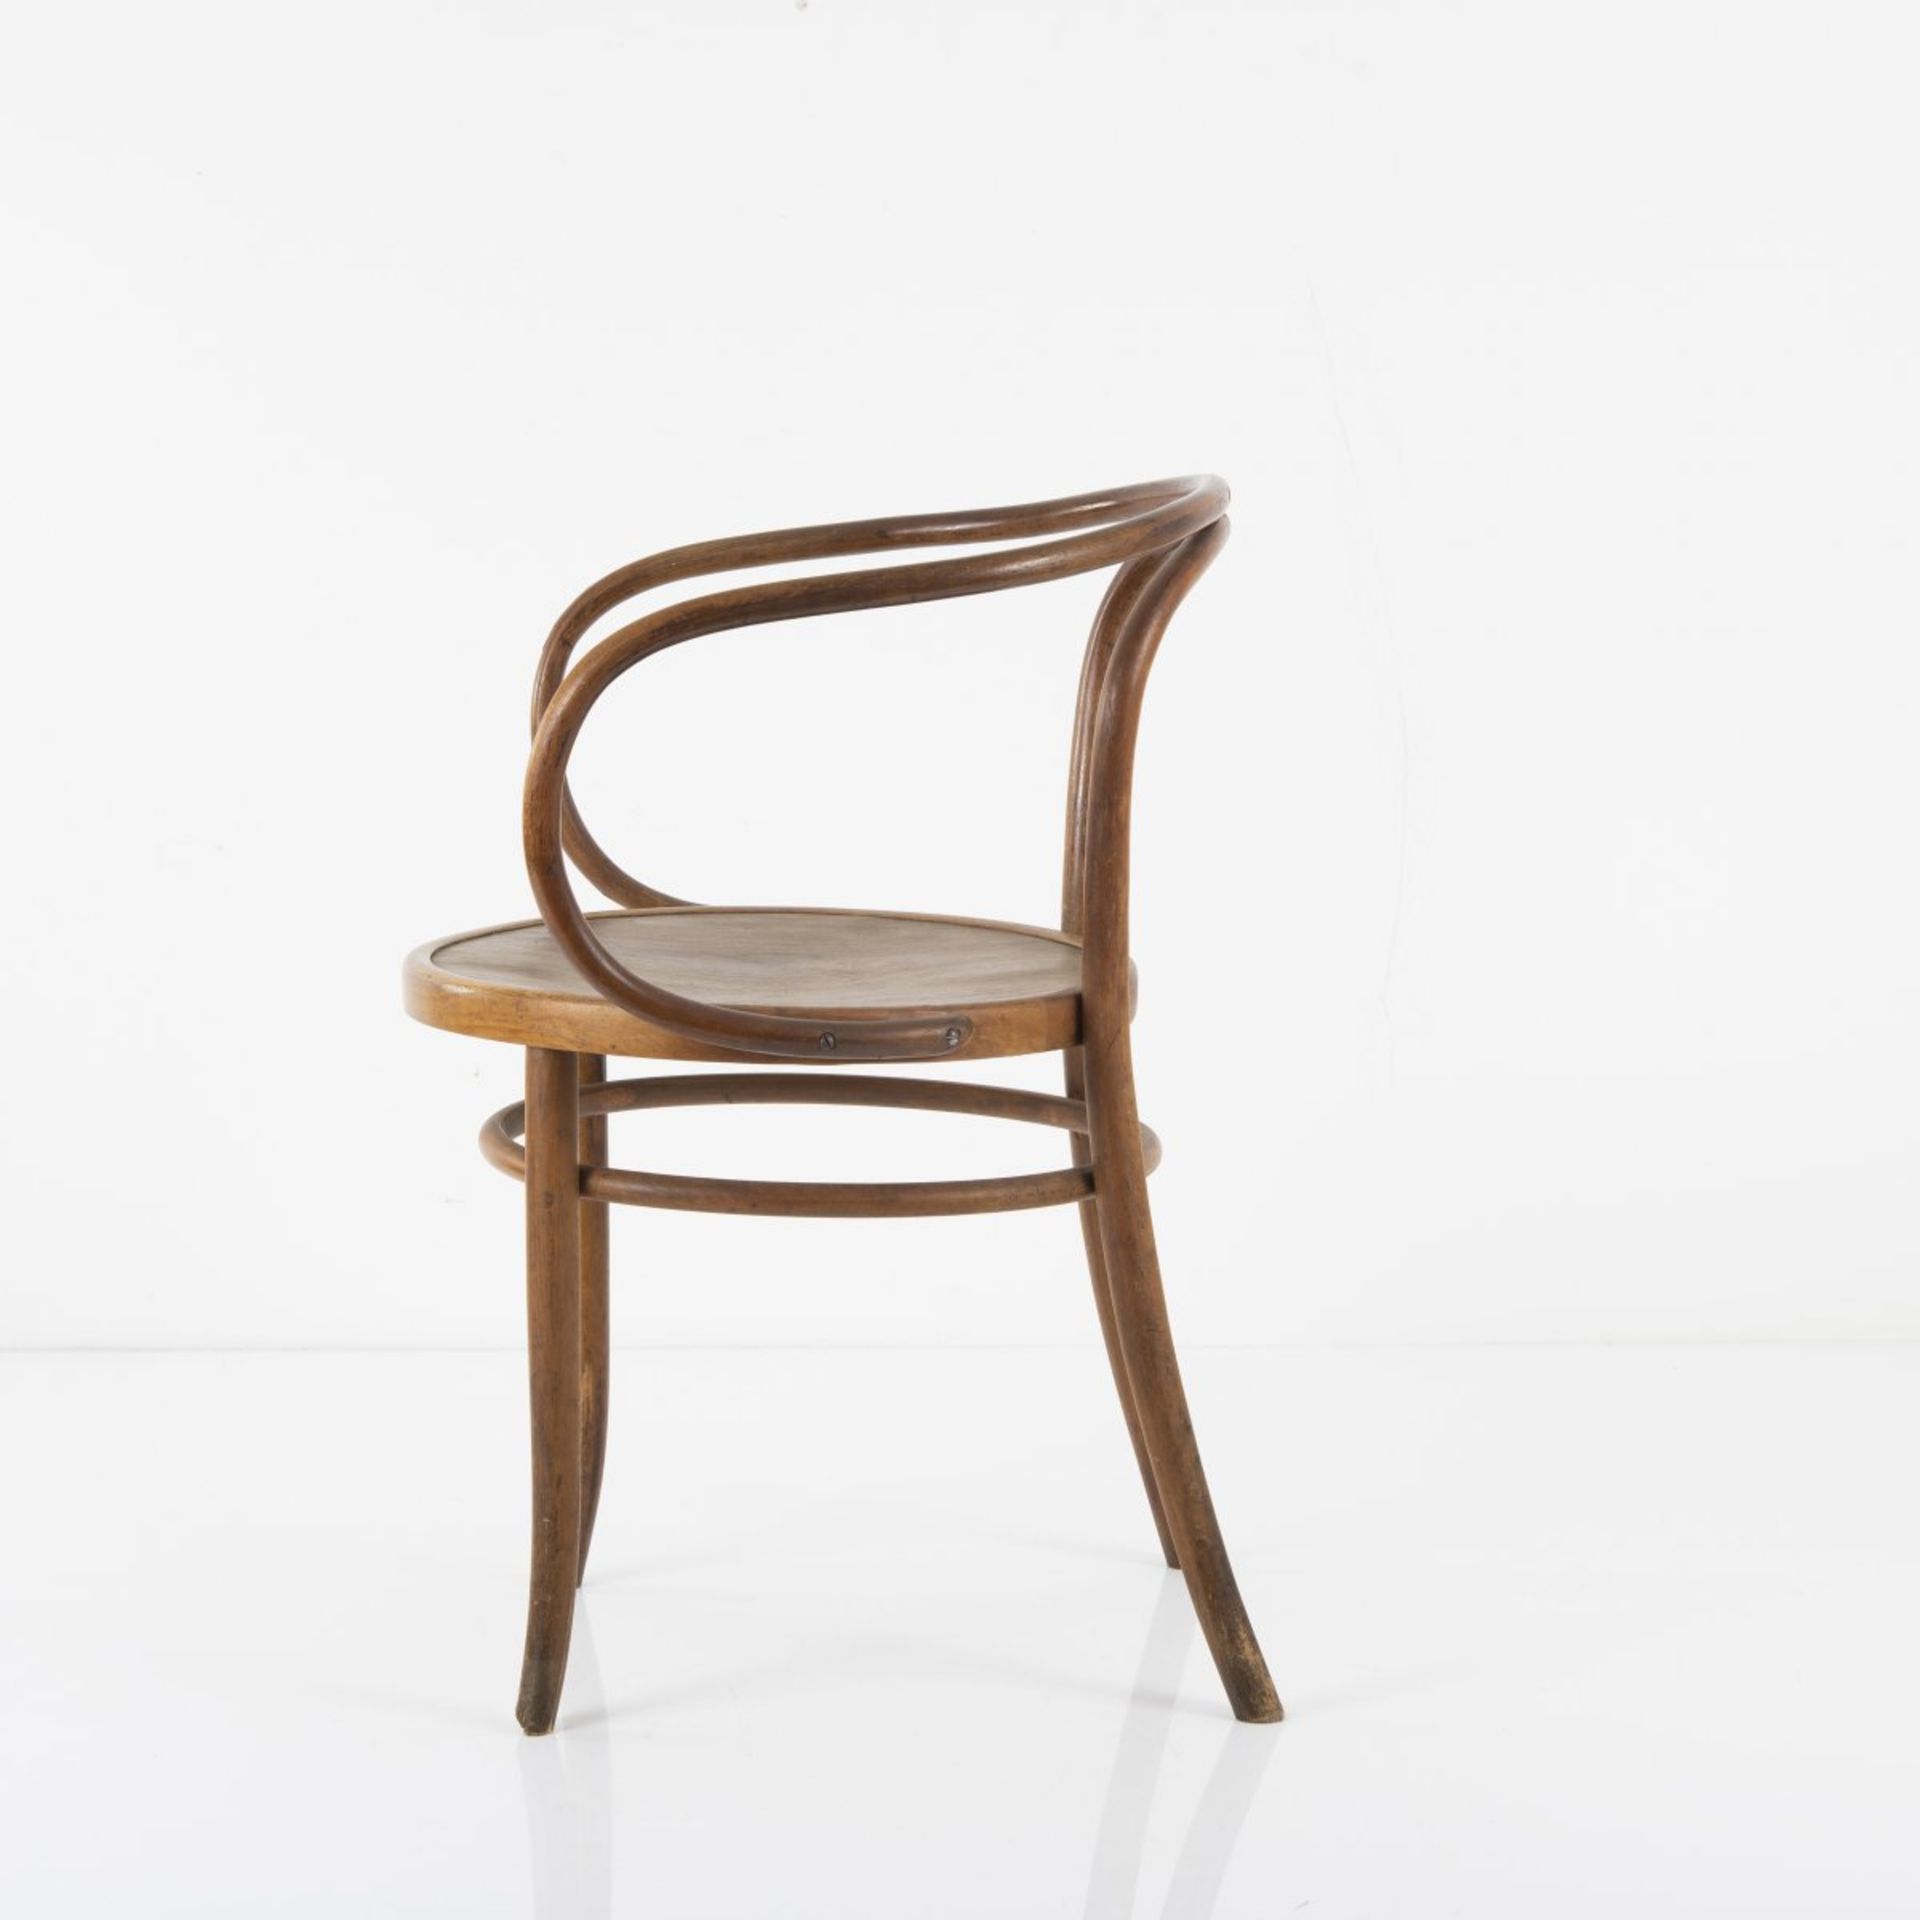 Thonet, Vienna (Works design), '6009' chair, c. 1900'6009' chair, c. 1900H. 76 x 60 x 56.5 cm. Beech - Bild 4 aus 7